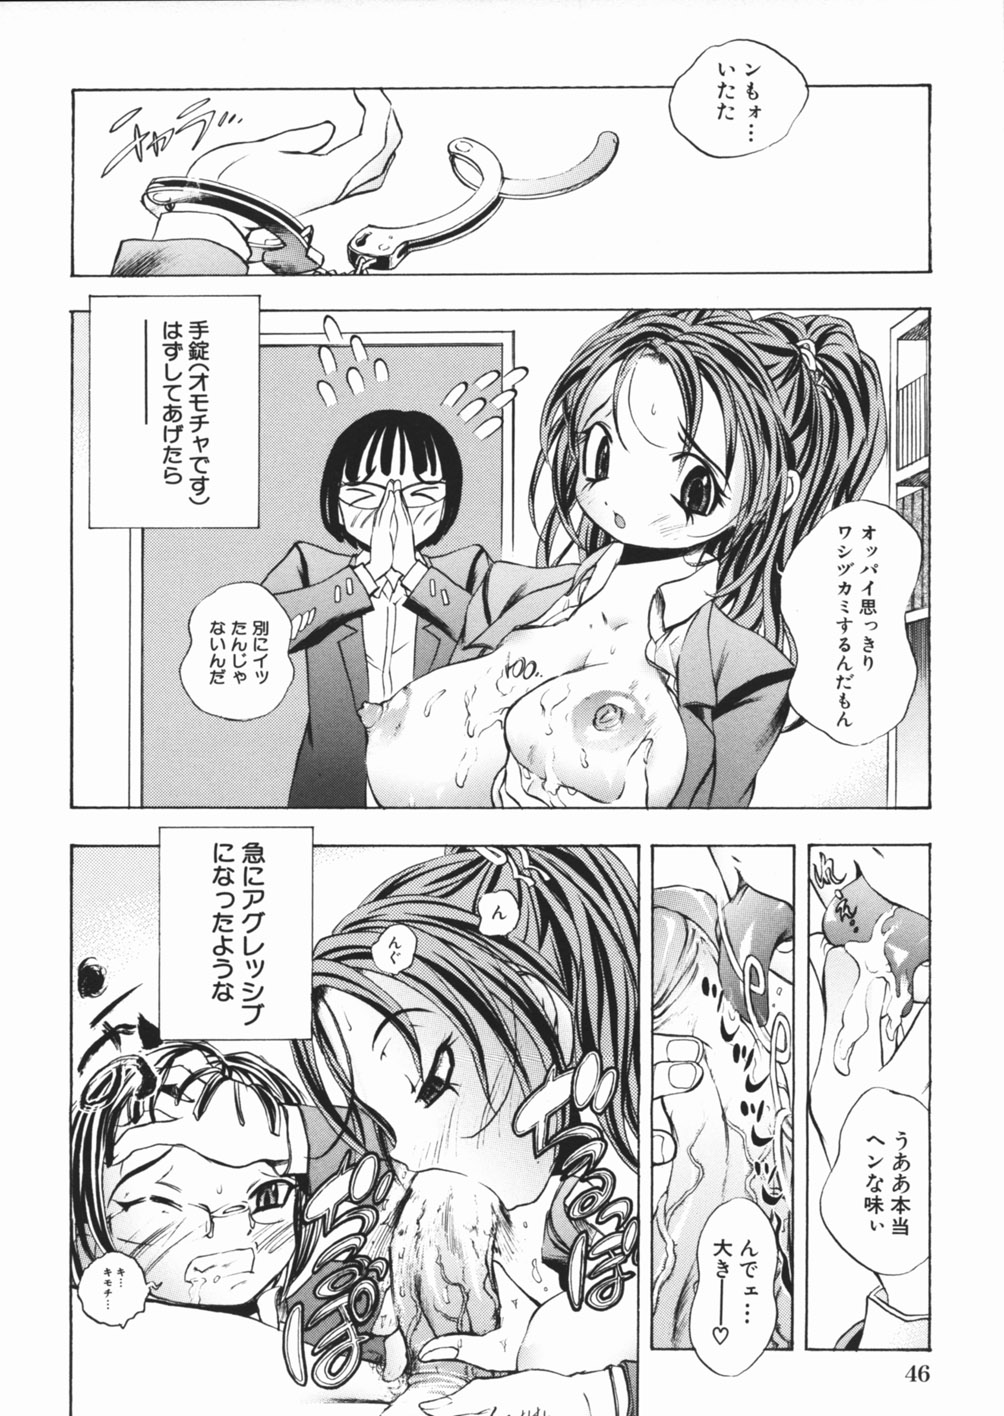 [Katarino Gisei] Pantsu wo Hikisagete page 50 full